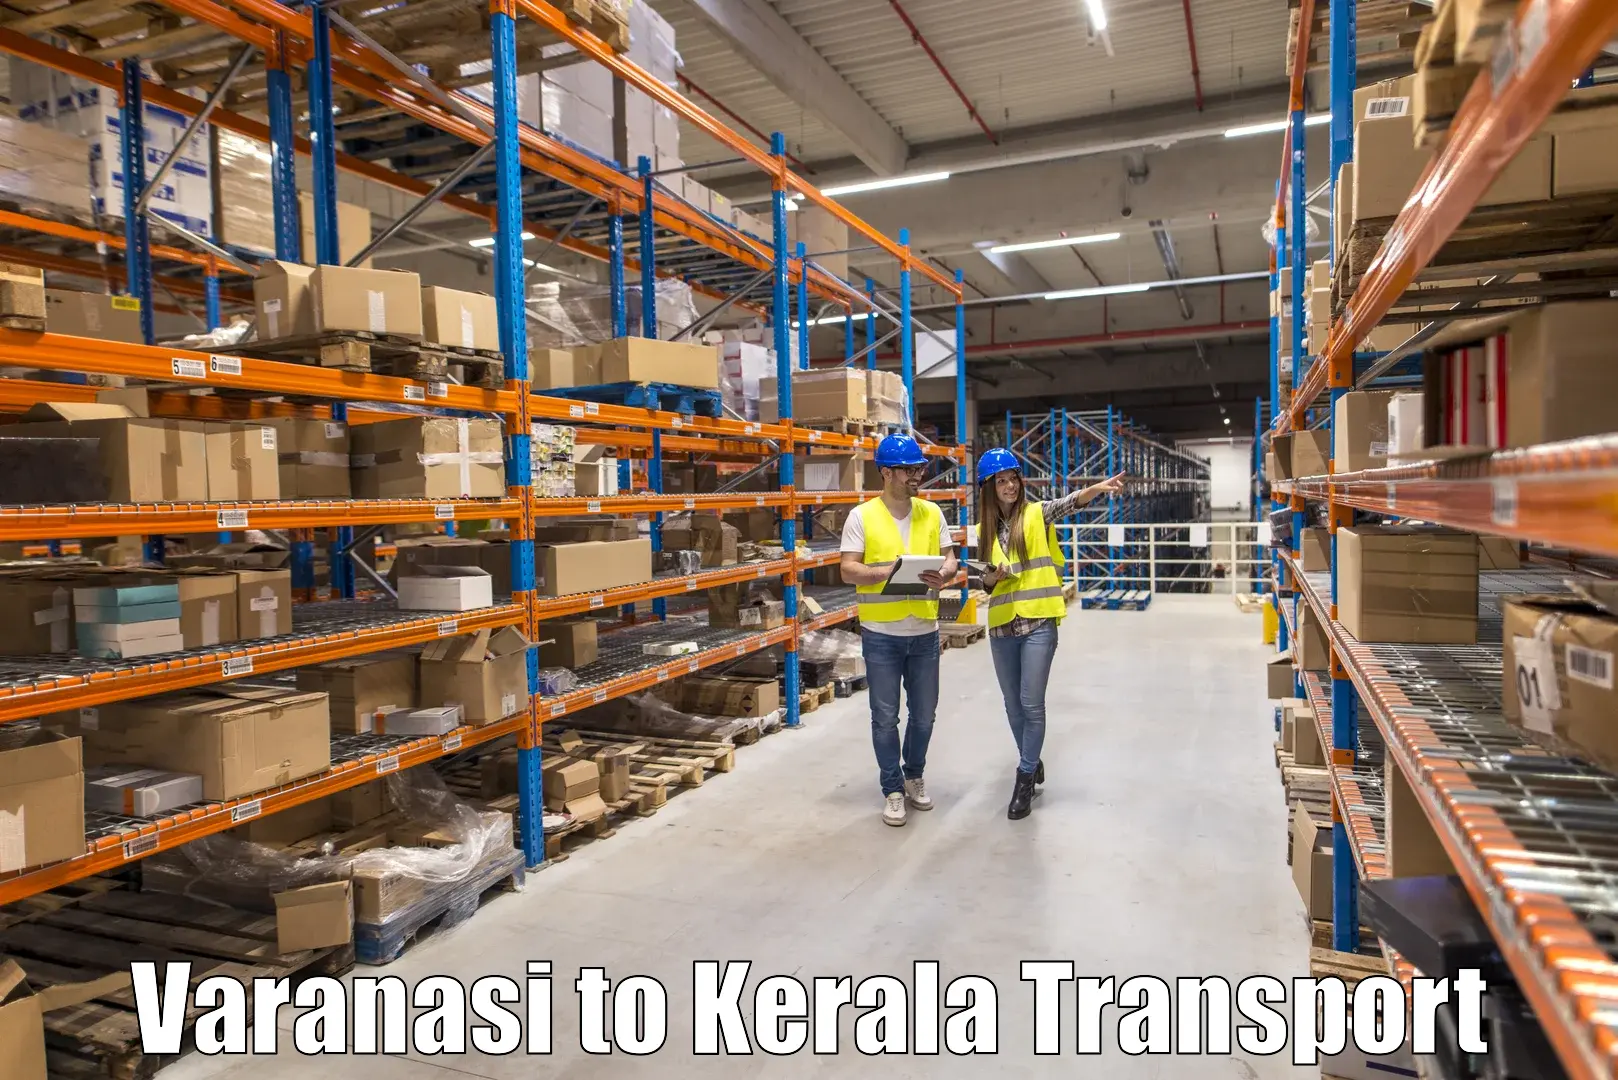 Road transport online services Varanasi to Alathur Malabar